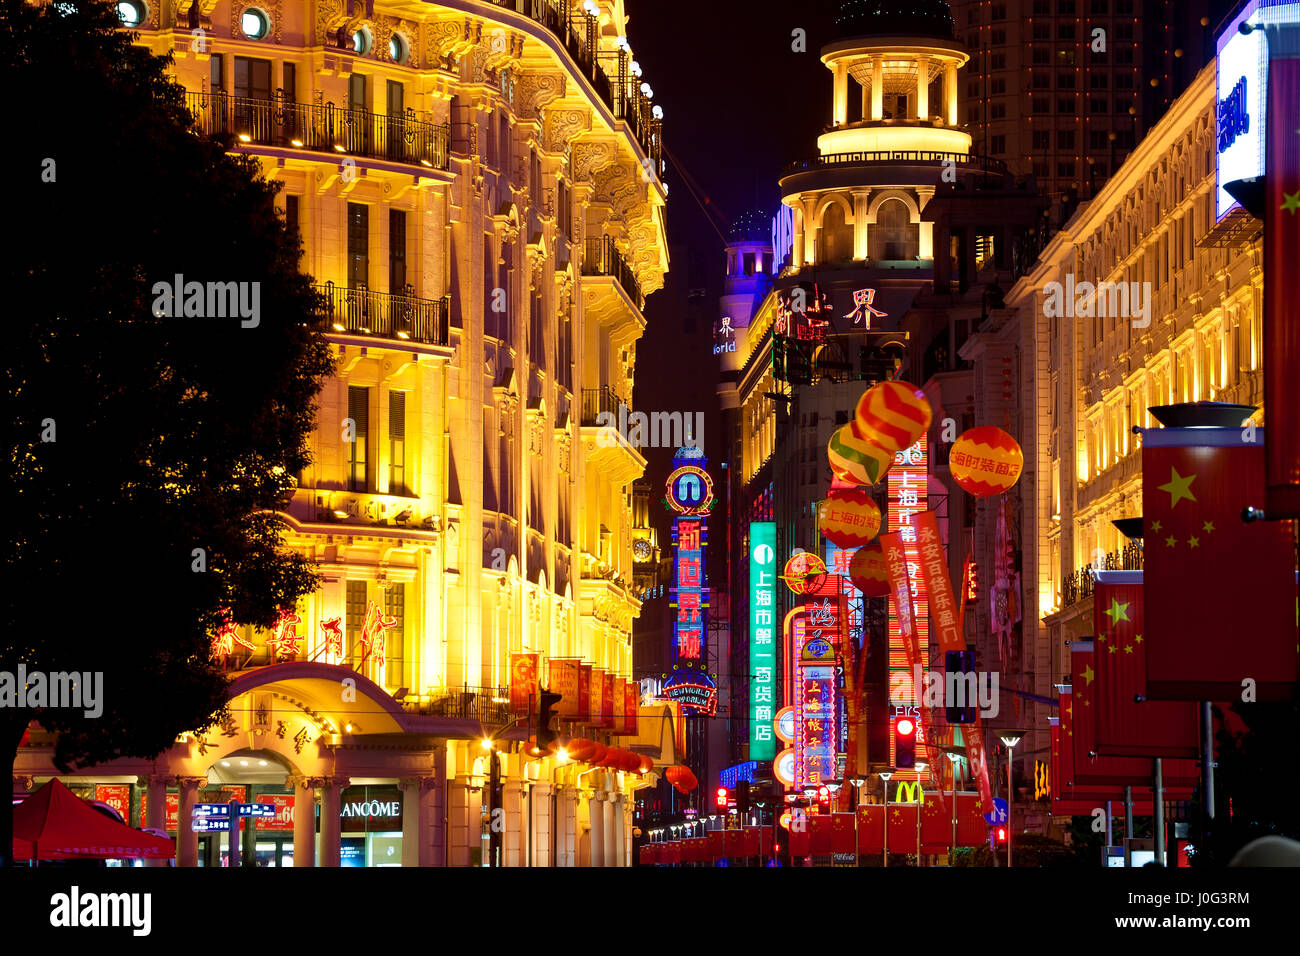 Les bâtiments éclairés la nuit avec des drapeaux chinois, Nanjing Road, Shanghai, Chine Banque D'Images